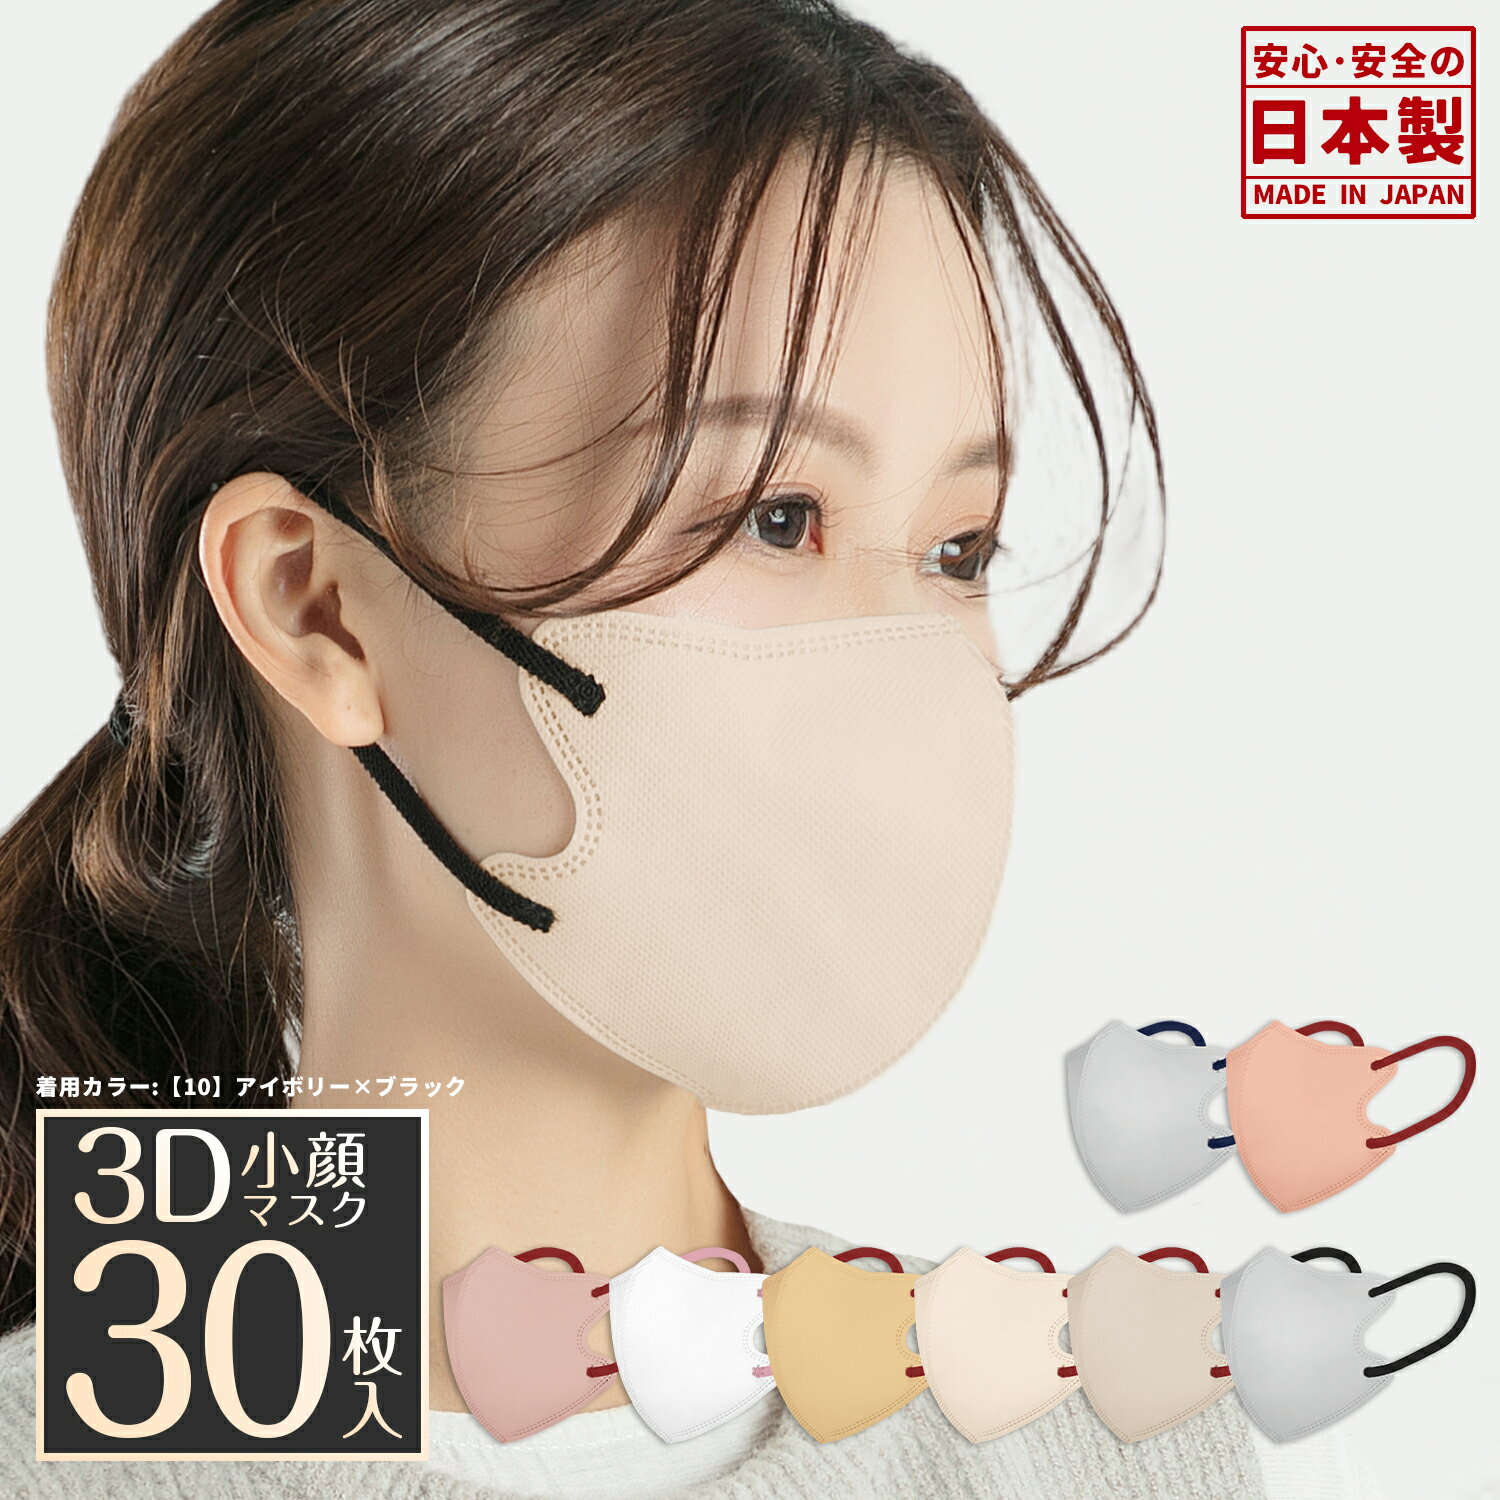 ★スーパーSALEポイント5倍★日本製 バイカラー 3Dマスク 立体マスク 30枚入 花粉対策 3dマスク 3層構造 福岡工場出荷 …